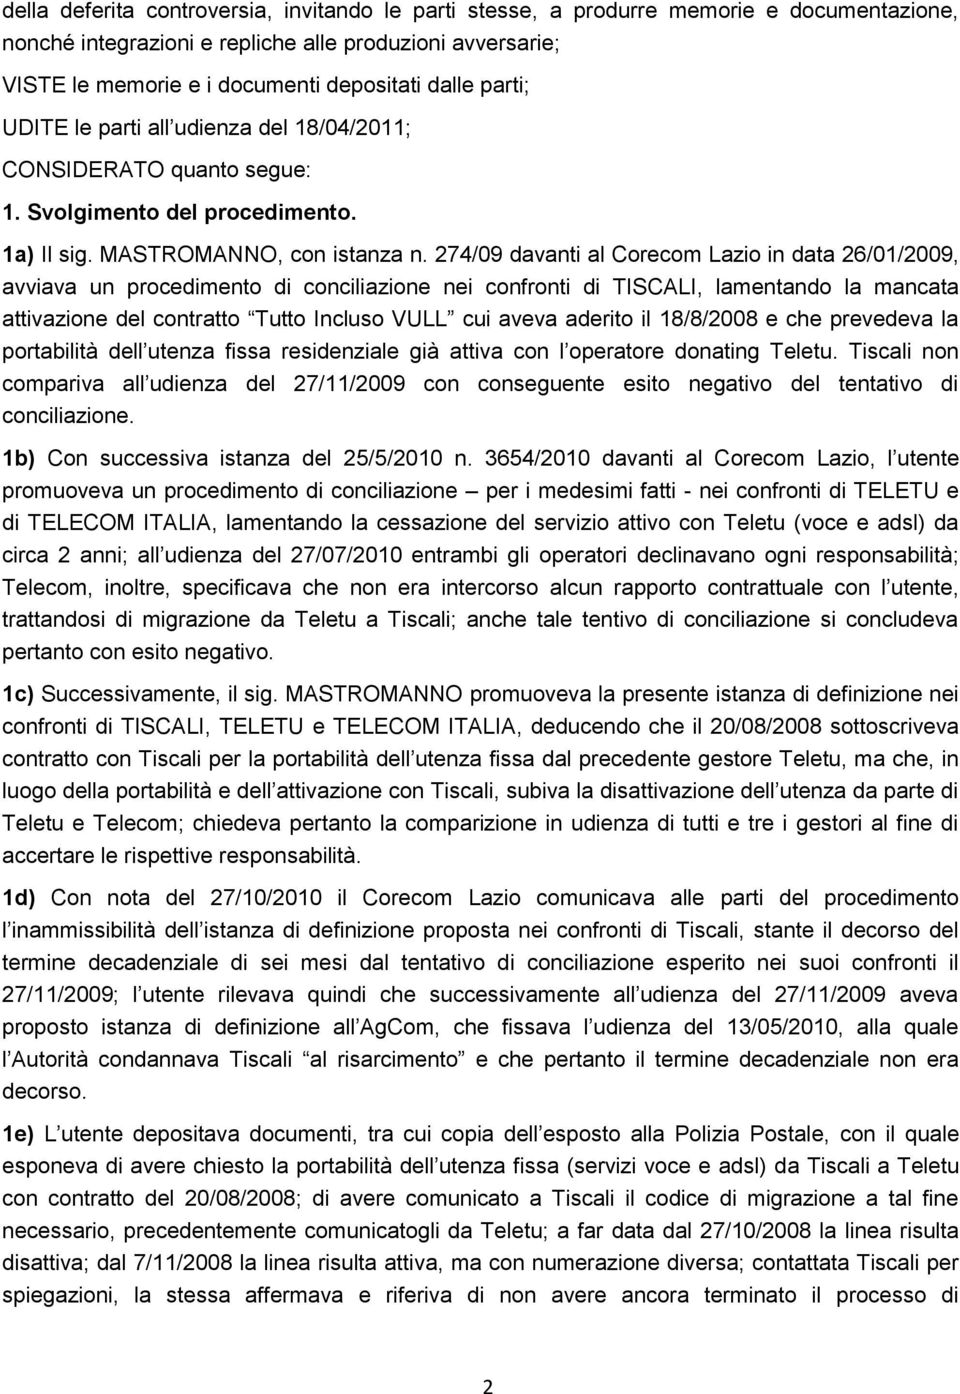 274/09 davanti al Corecom Lazio in data 26/01/2009, avviava un procedimento di conciliazione nei confronti di TISCALI, lamentando la mancata attivazione del contratto Tutto Incluso VULL cui aveva